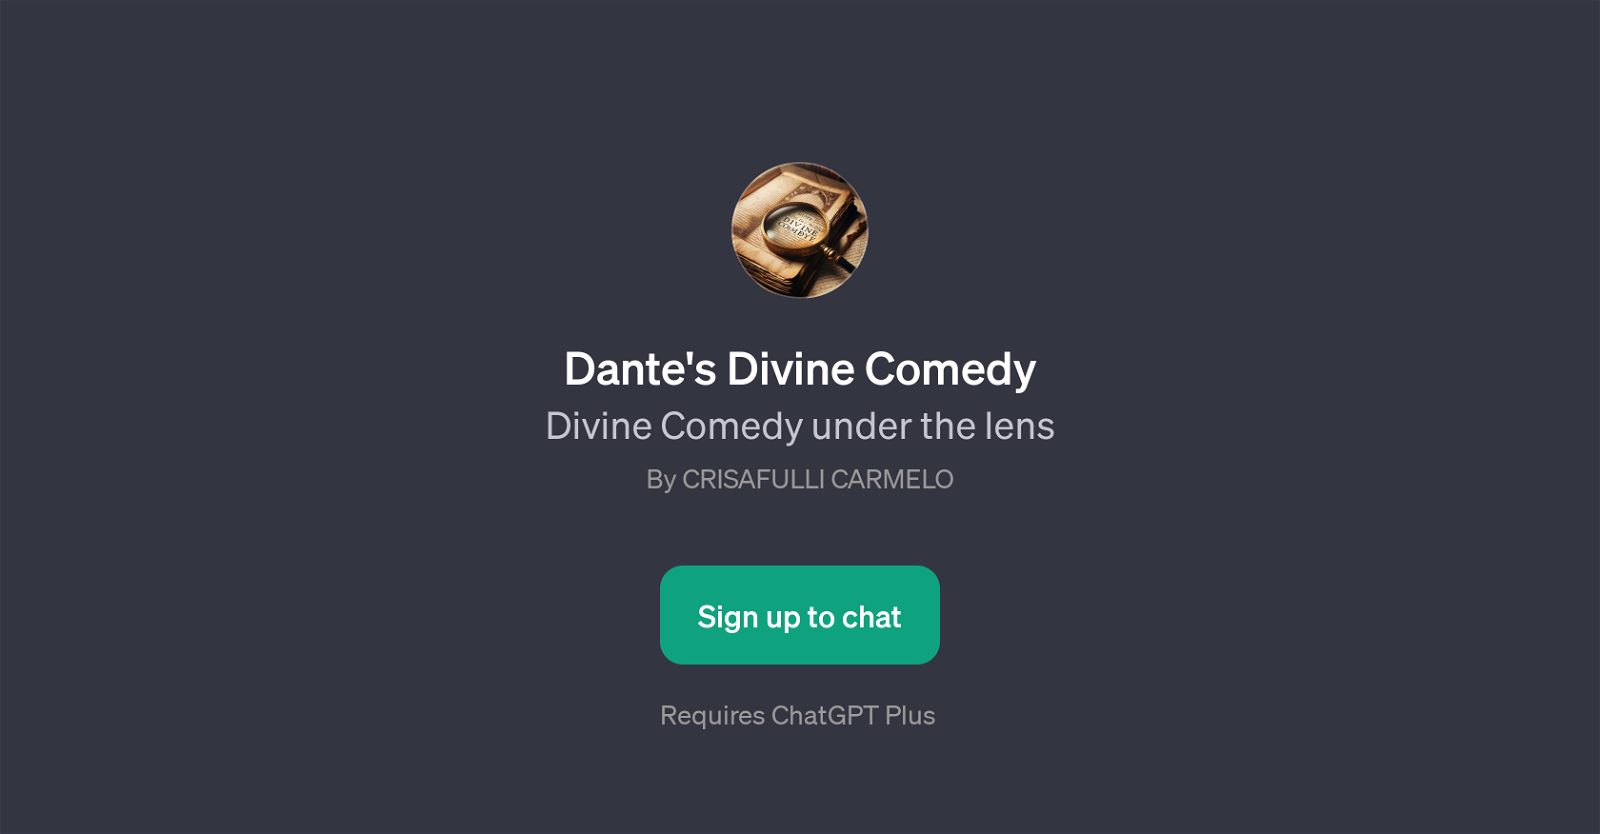 Dante's Divine Comedy website